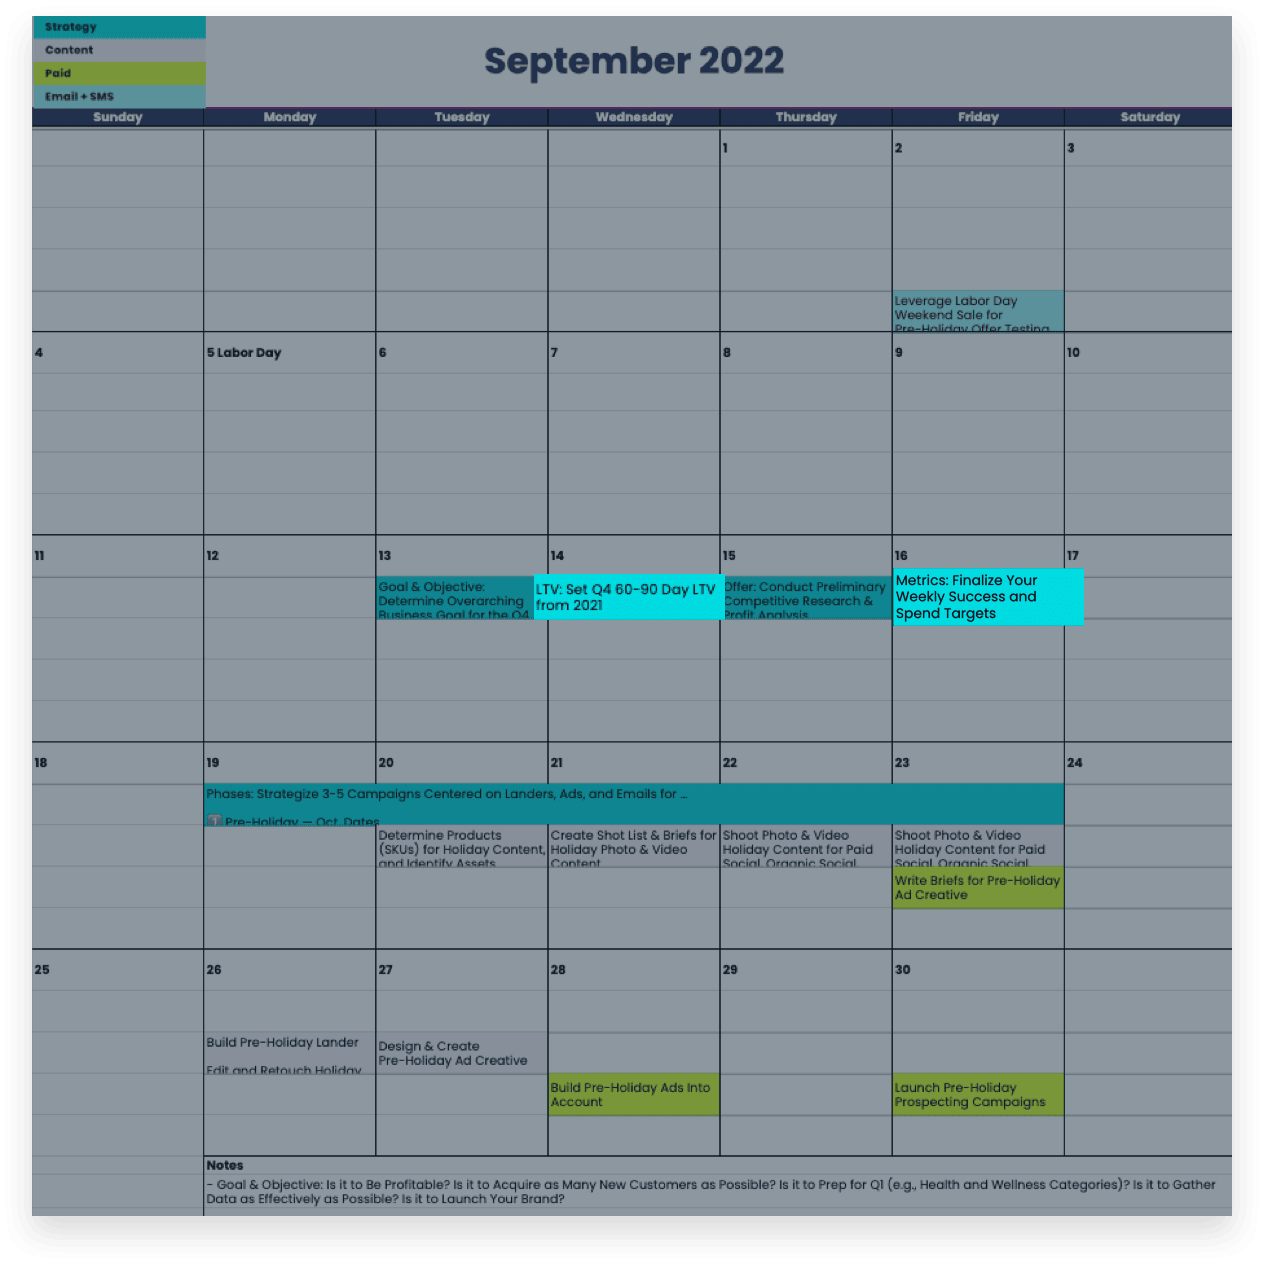 Black Friday 2022 planning LTV and metrics tasks in September